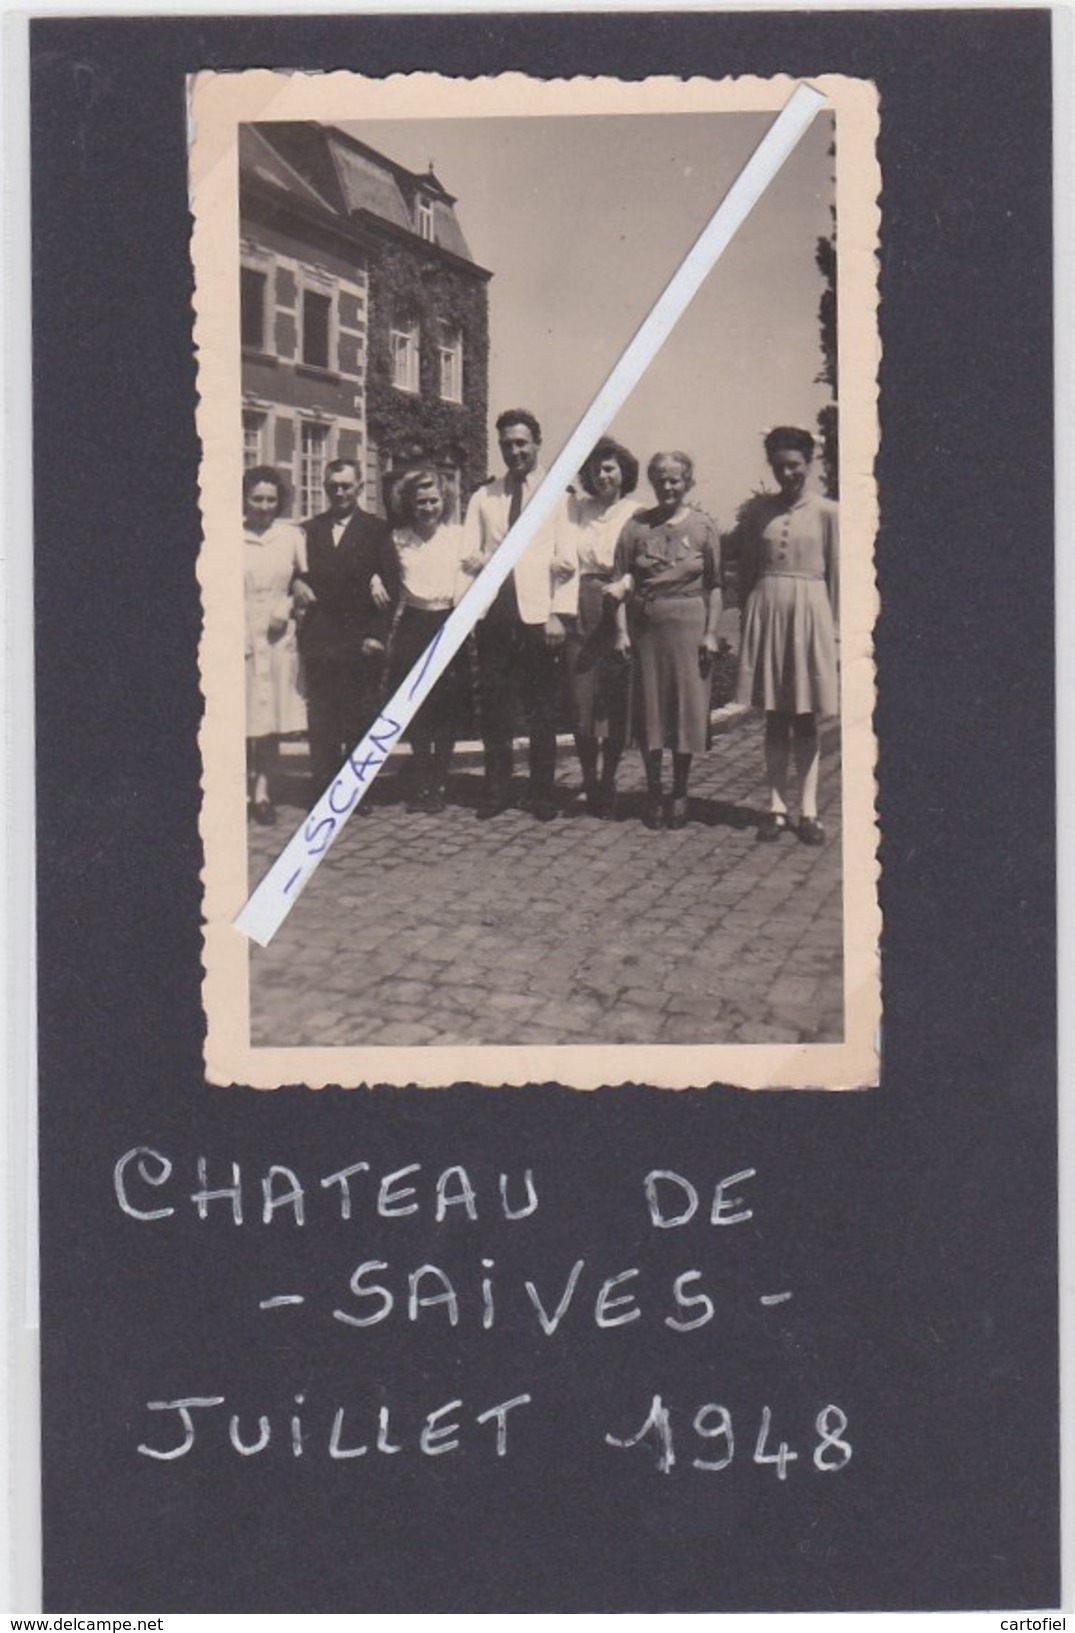 SAIVES-CHATEAU-KASTEEL-PHOTO-ORIGINAL-1948-PETIT ARCHIVE FAMILLE PECSTEEN-CORNET D'ELZIUS-VOYEZ 2 SCANS-TOP ! - Waremme